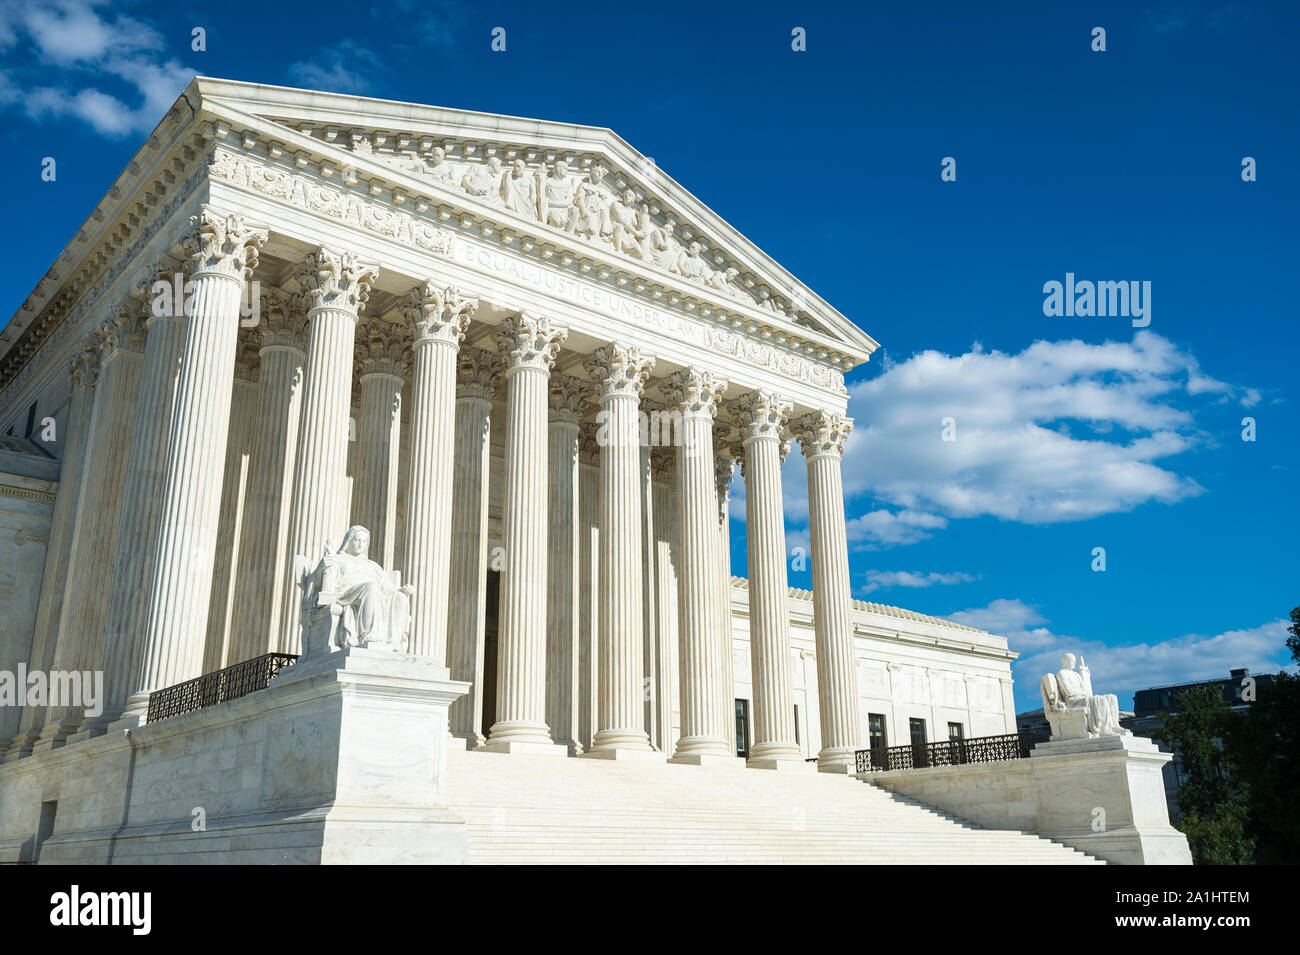 La Corte suprema degli Stati Uniti la costruzione di ingresso anteriore con una vista panoramica delle colonne e passi sotto il brillante sole estivo a Washington DC, Stati Uniti d'America Foto Stock